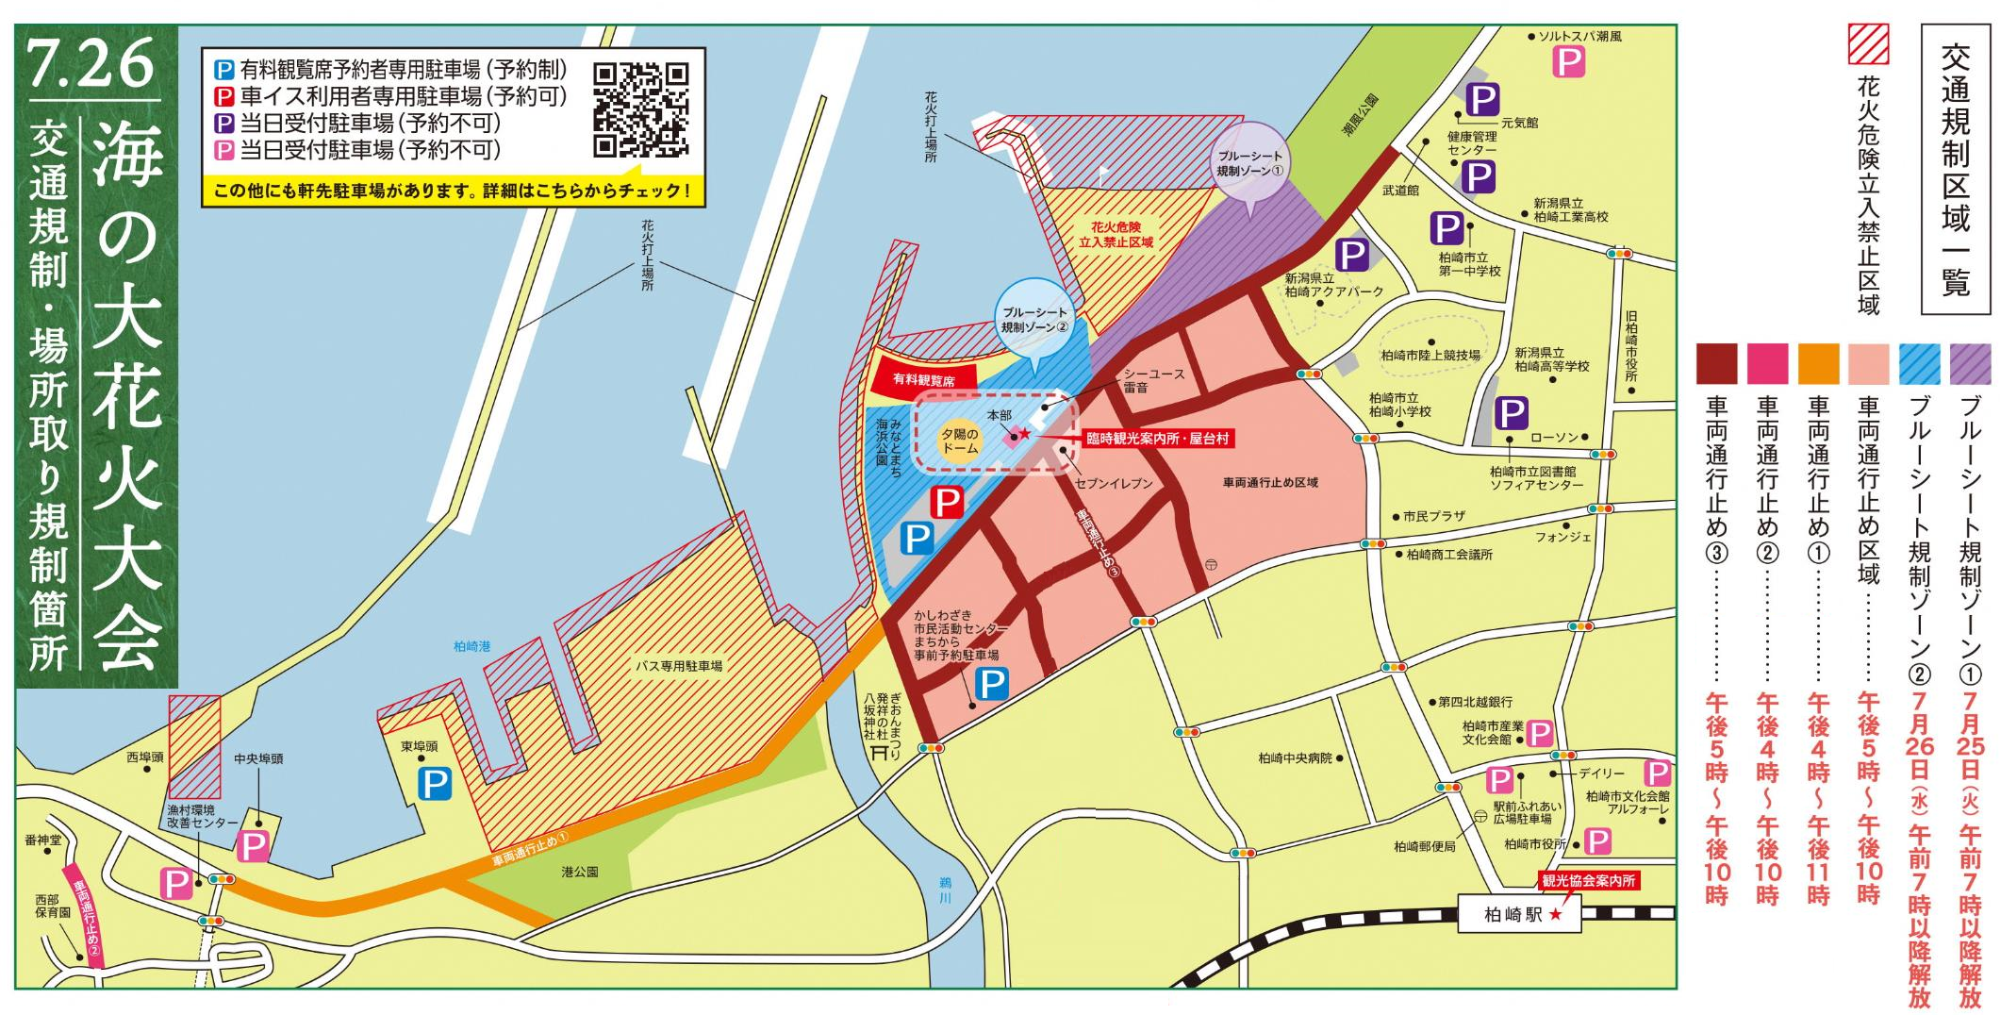 海の大花火大会の駐車場・交通規制・場所取り規制の案内図